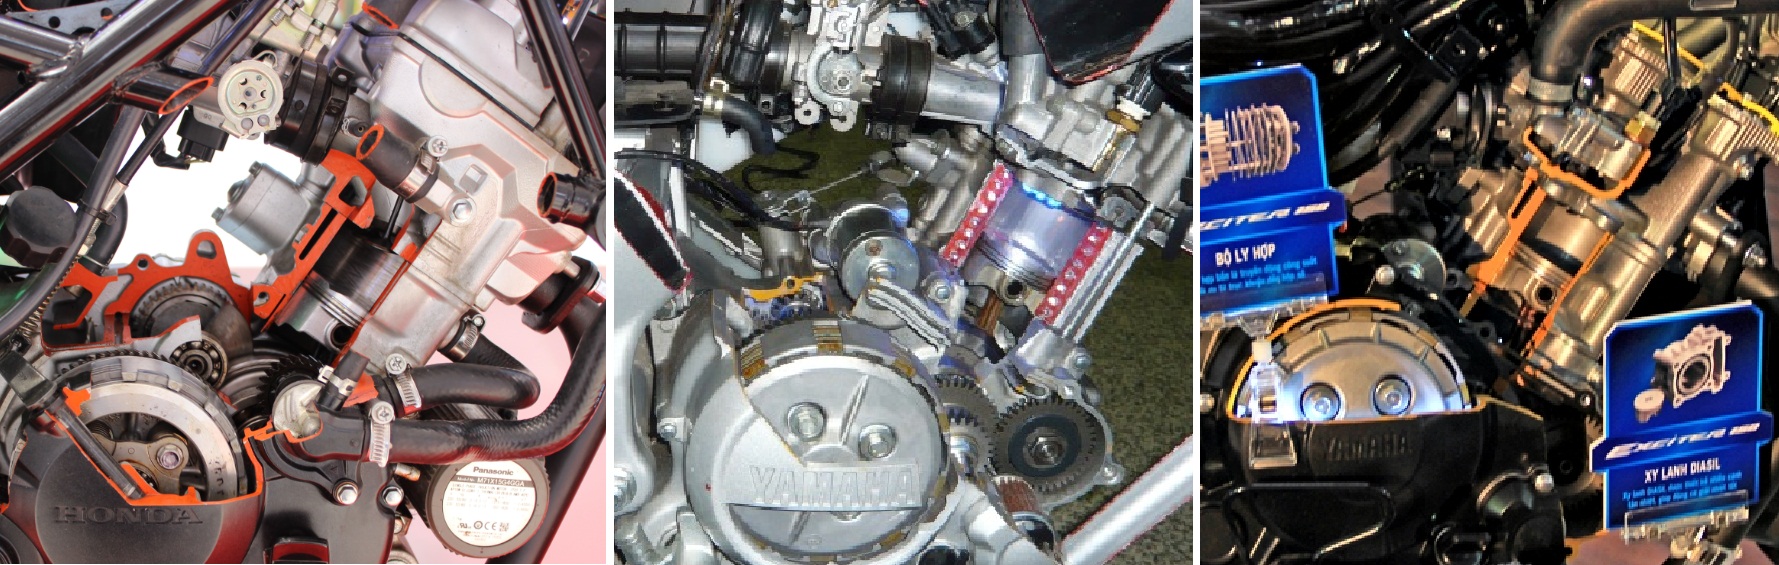 cb150 nvl mxxking engine